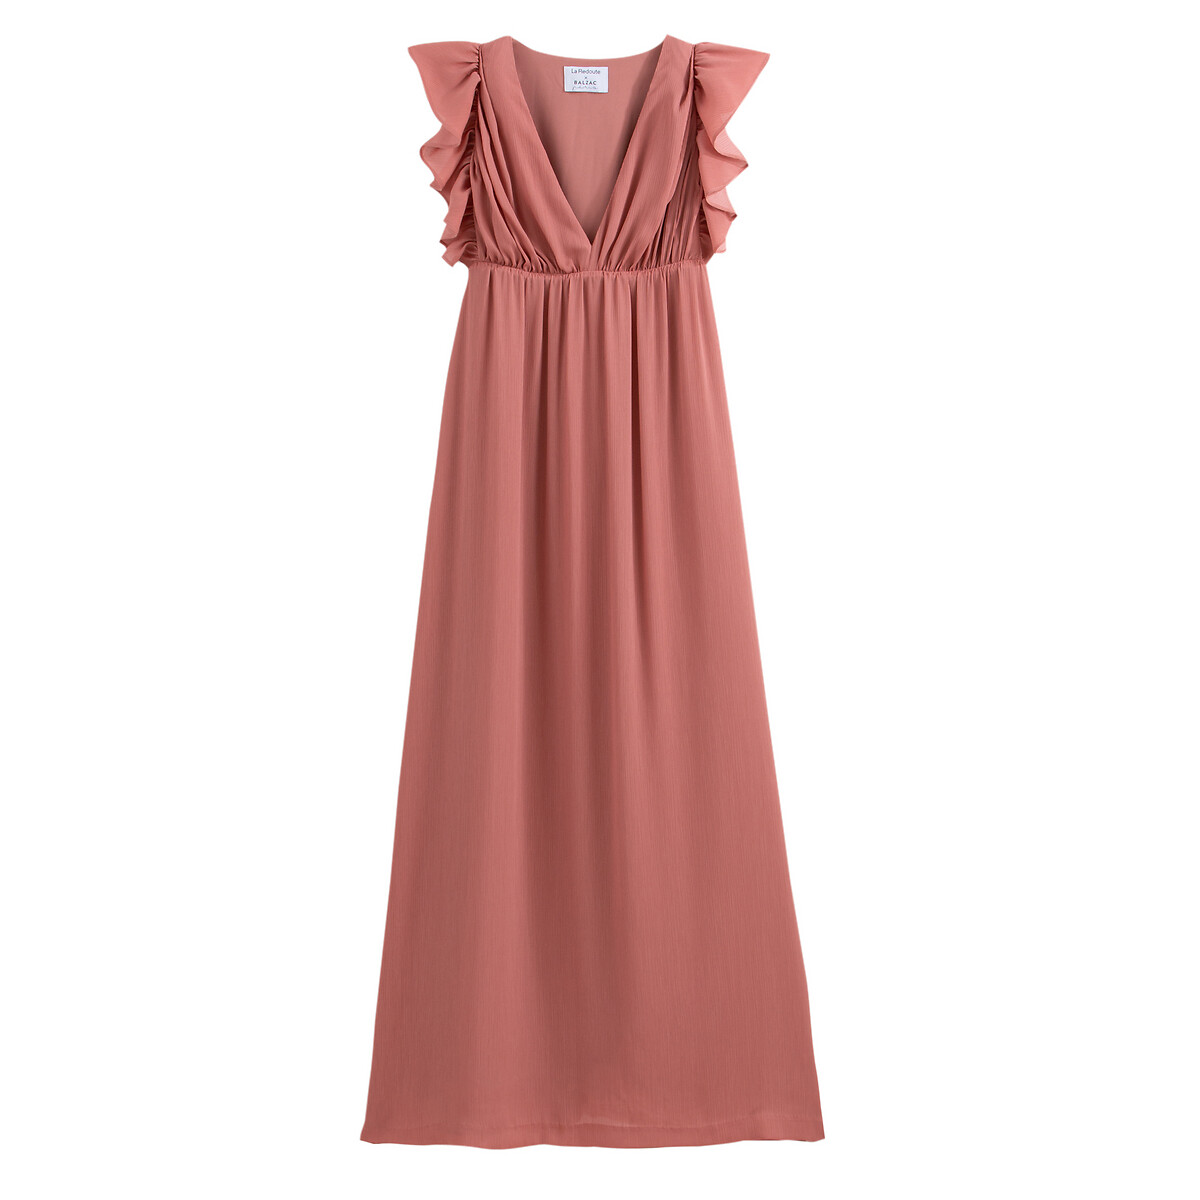 Платье La Redoute Длинное без рукавов 38 (FR) - 44 (RUS) розовый, размер 38 (FR) - 44 (RUS) Длинное без рукавов 38 (FR) - 44 (RUS) розовый - фото 1